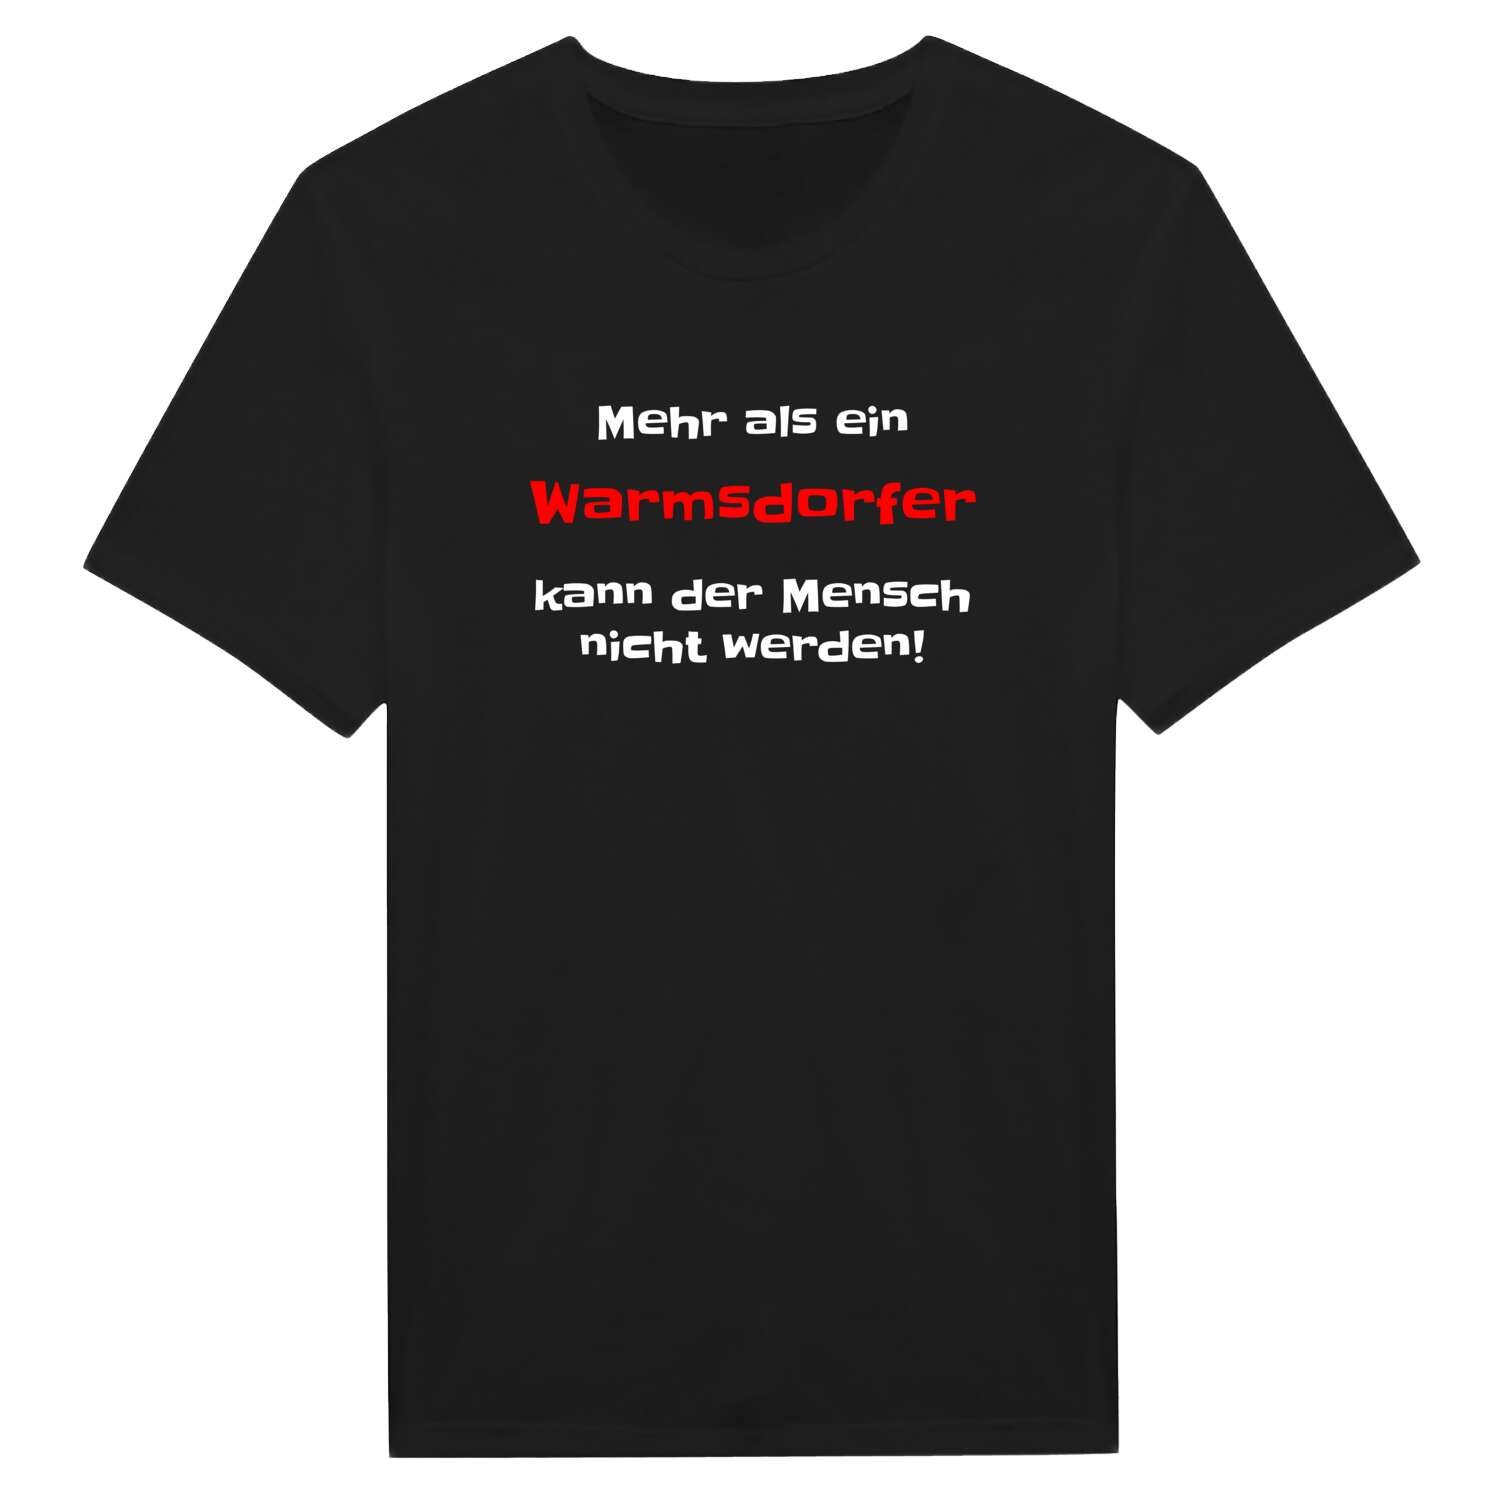 Warmsdorf T-Shirt »Mehr als ein«